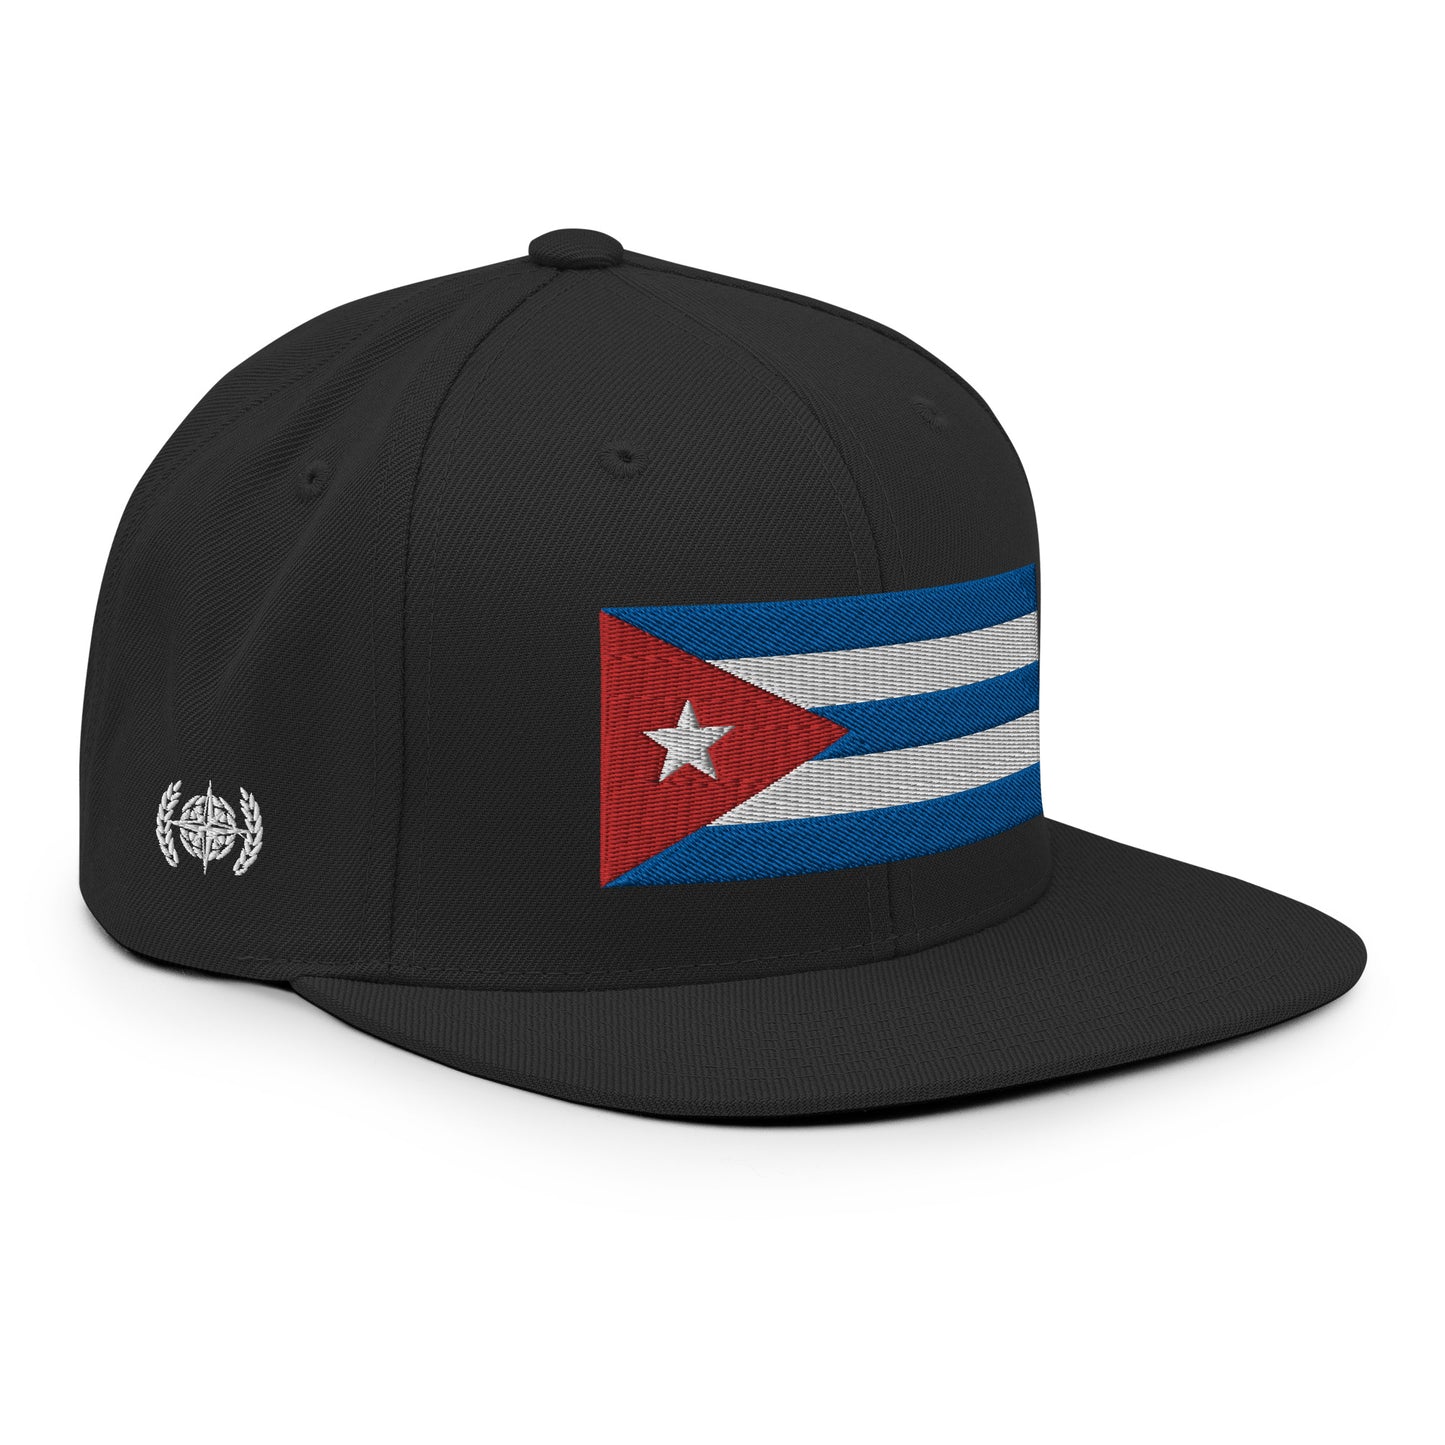 Heritage & Honor Snapback Cap 'Cuba' 2